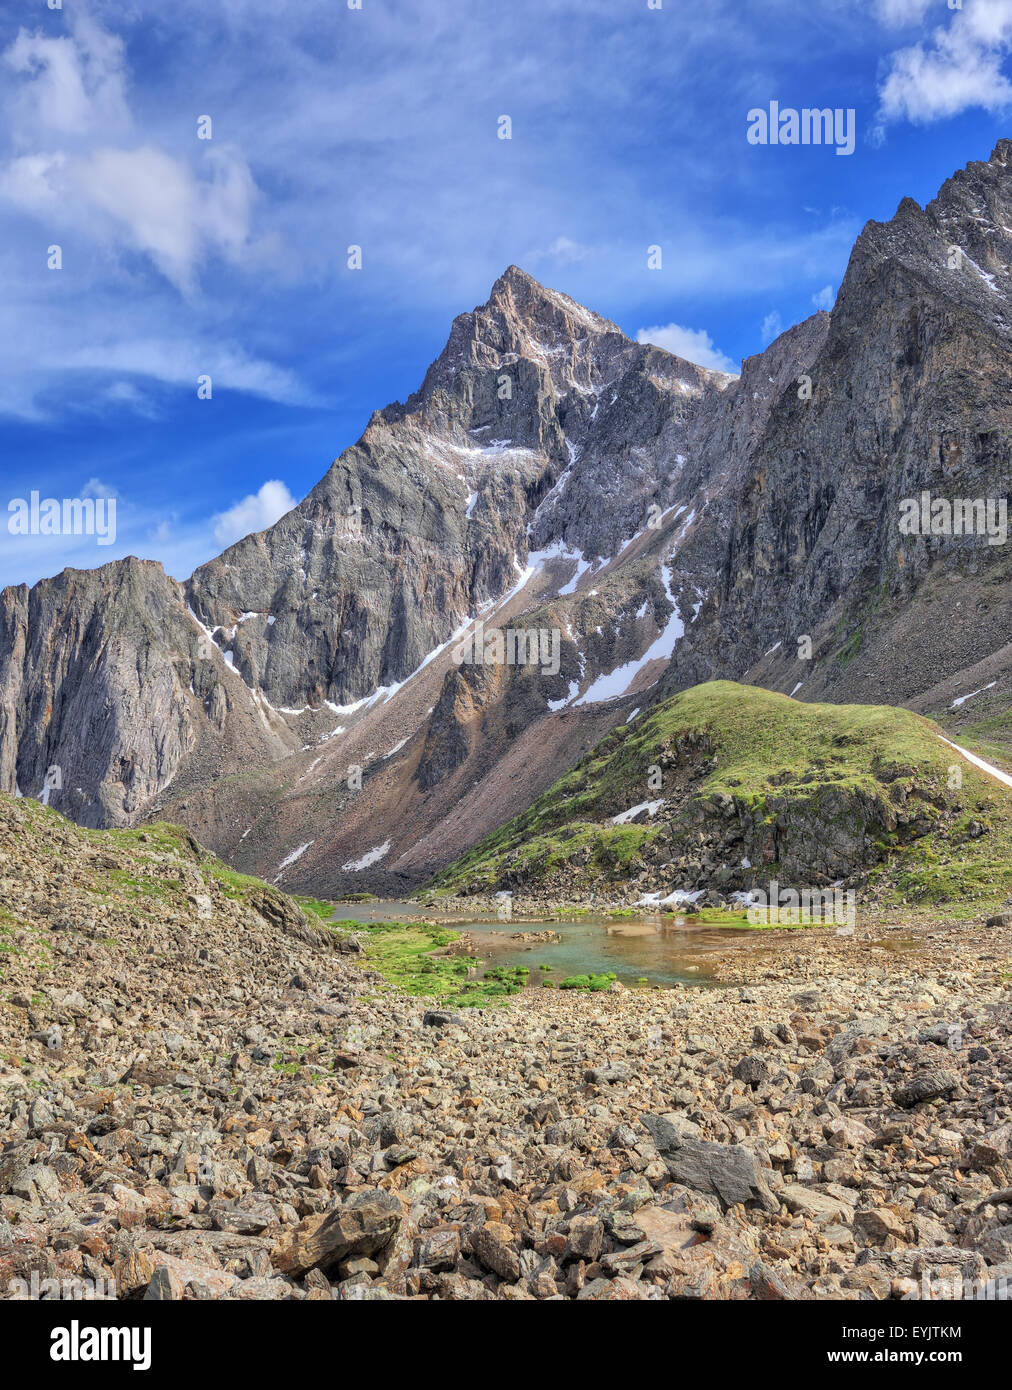 Strelnikov Peak (3284 m) - le plus haut sommet de l'Alpes de Sibérie. Sayans. La République de Bouriatie Banque D'Images